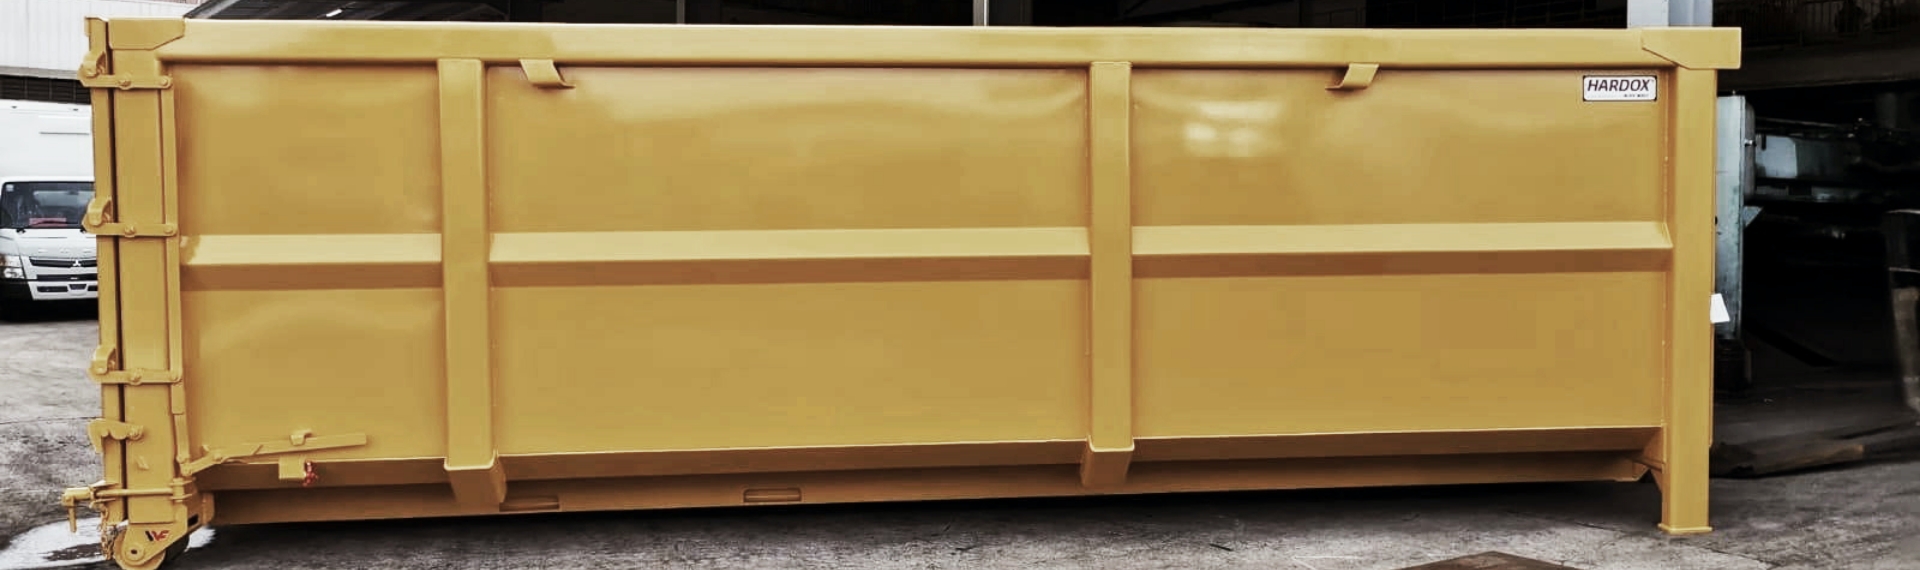 Un elegante contenedor de residuos de color amarillo fabricado con acero Hardox® HiAce.